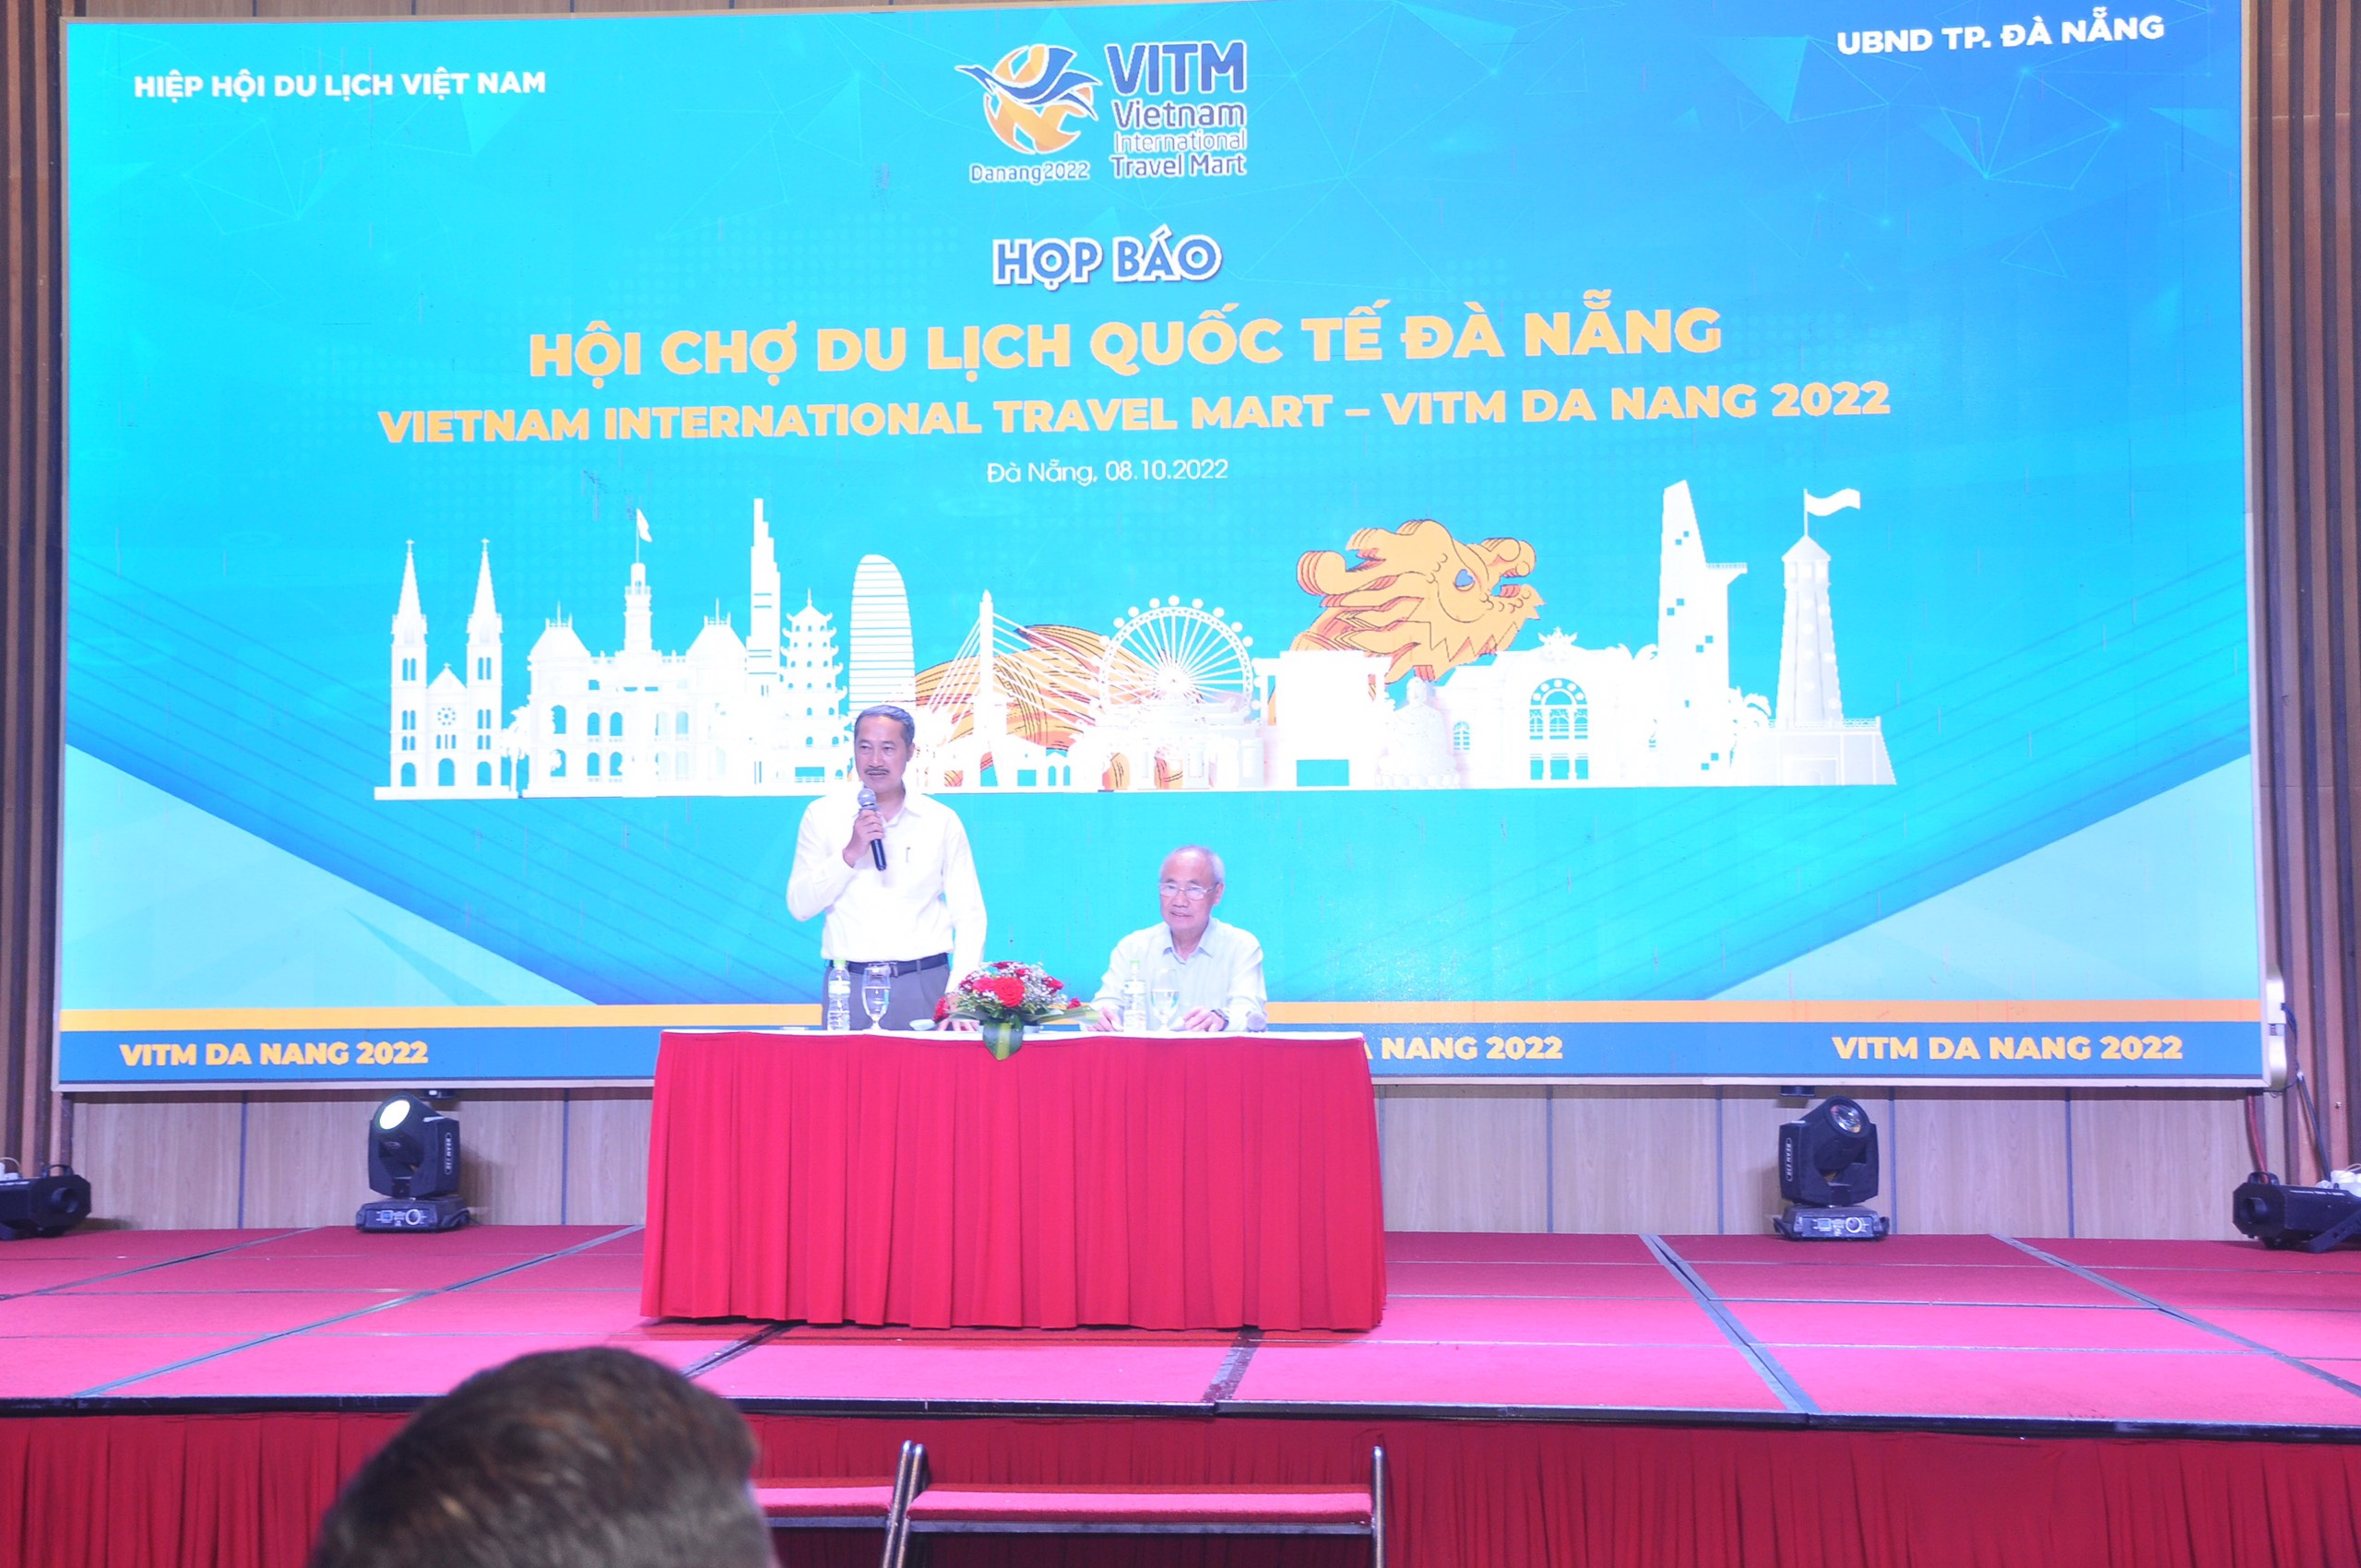  Hội chợ Du lịch quốc tế VITM Đà Nẵng 2022 sẽ diễn ra từ ngày 9- 11/12